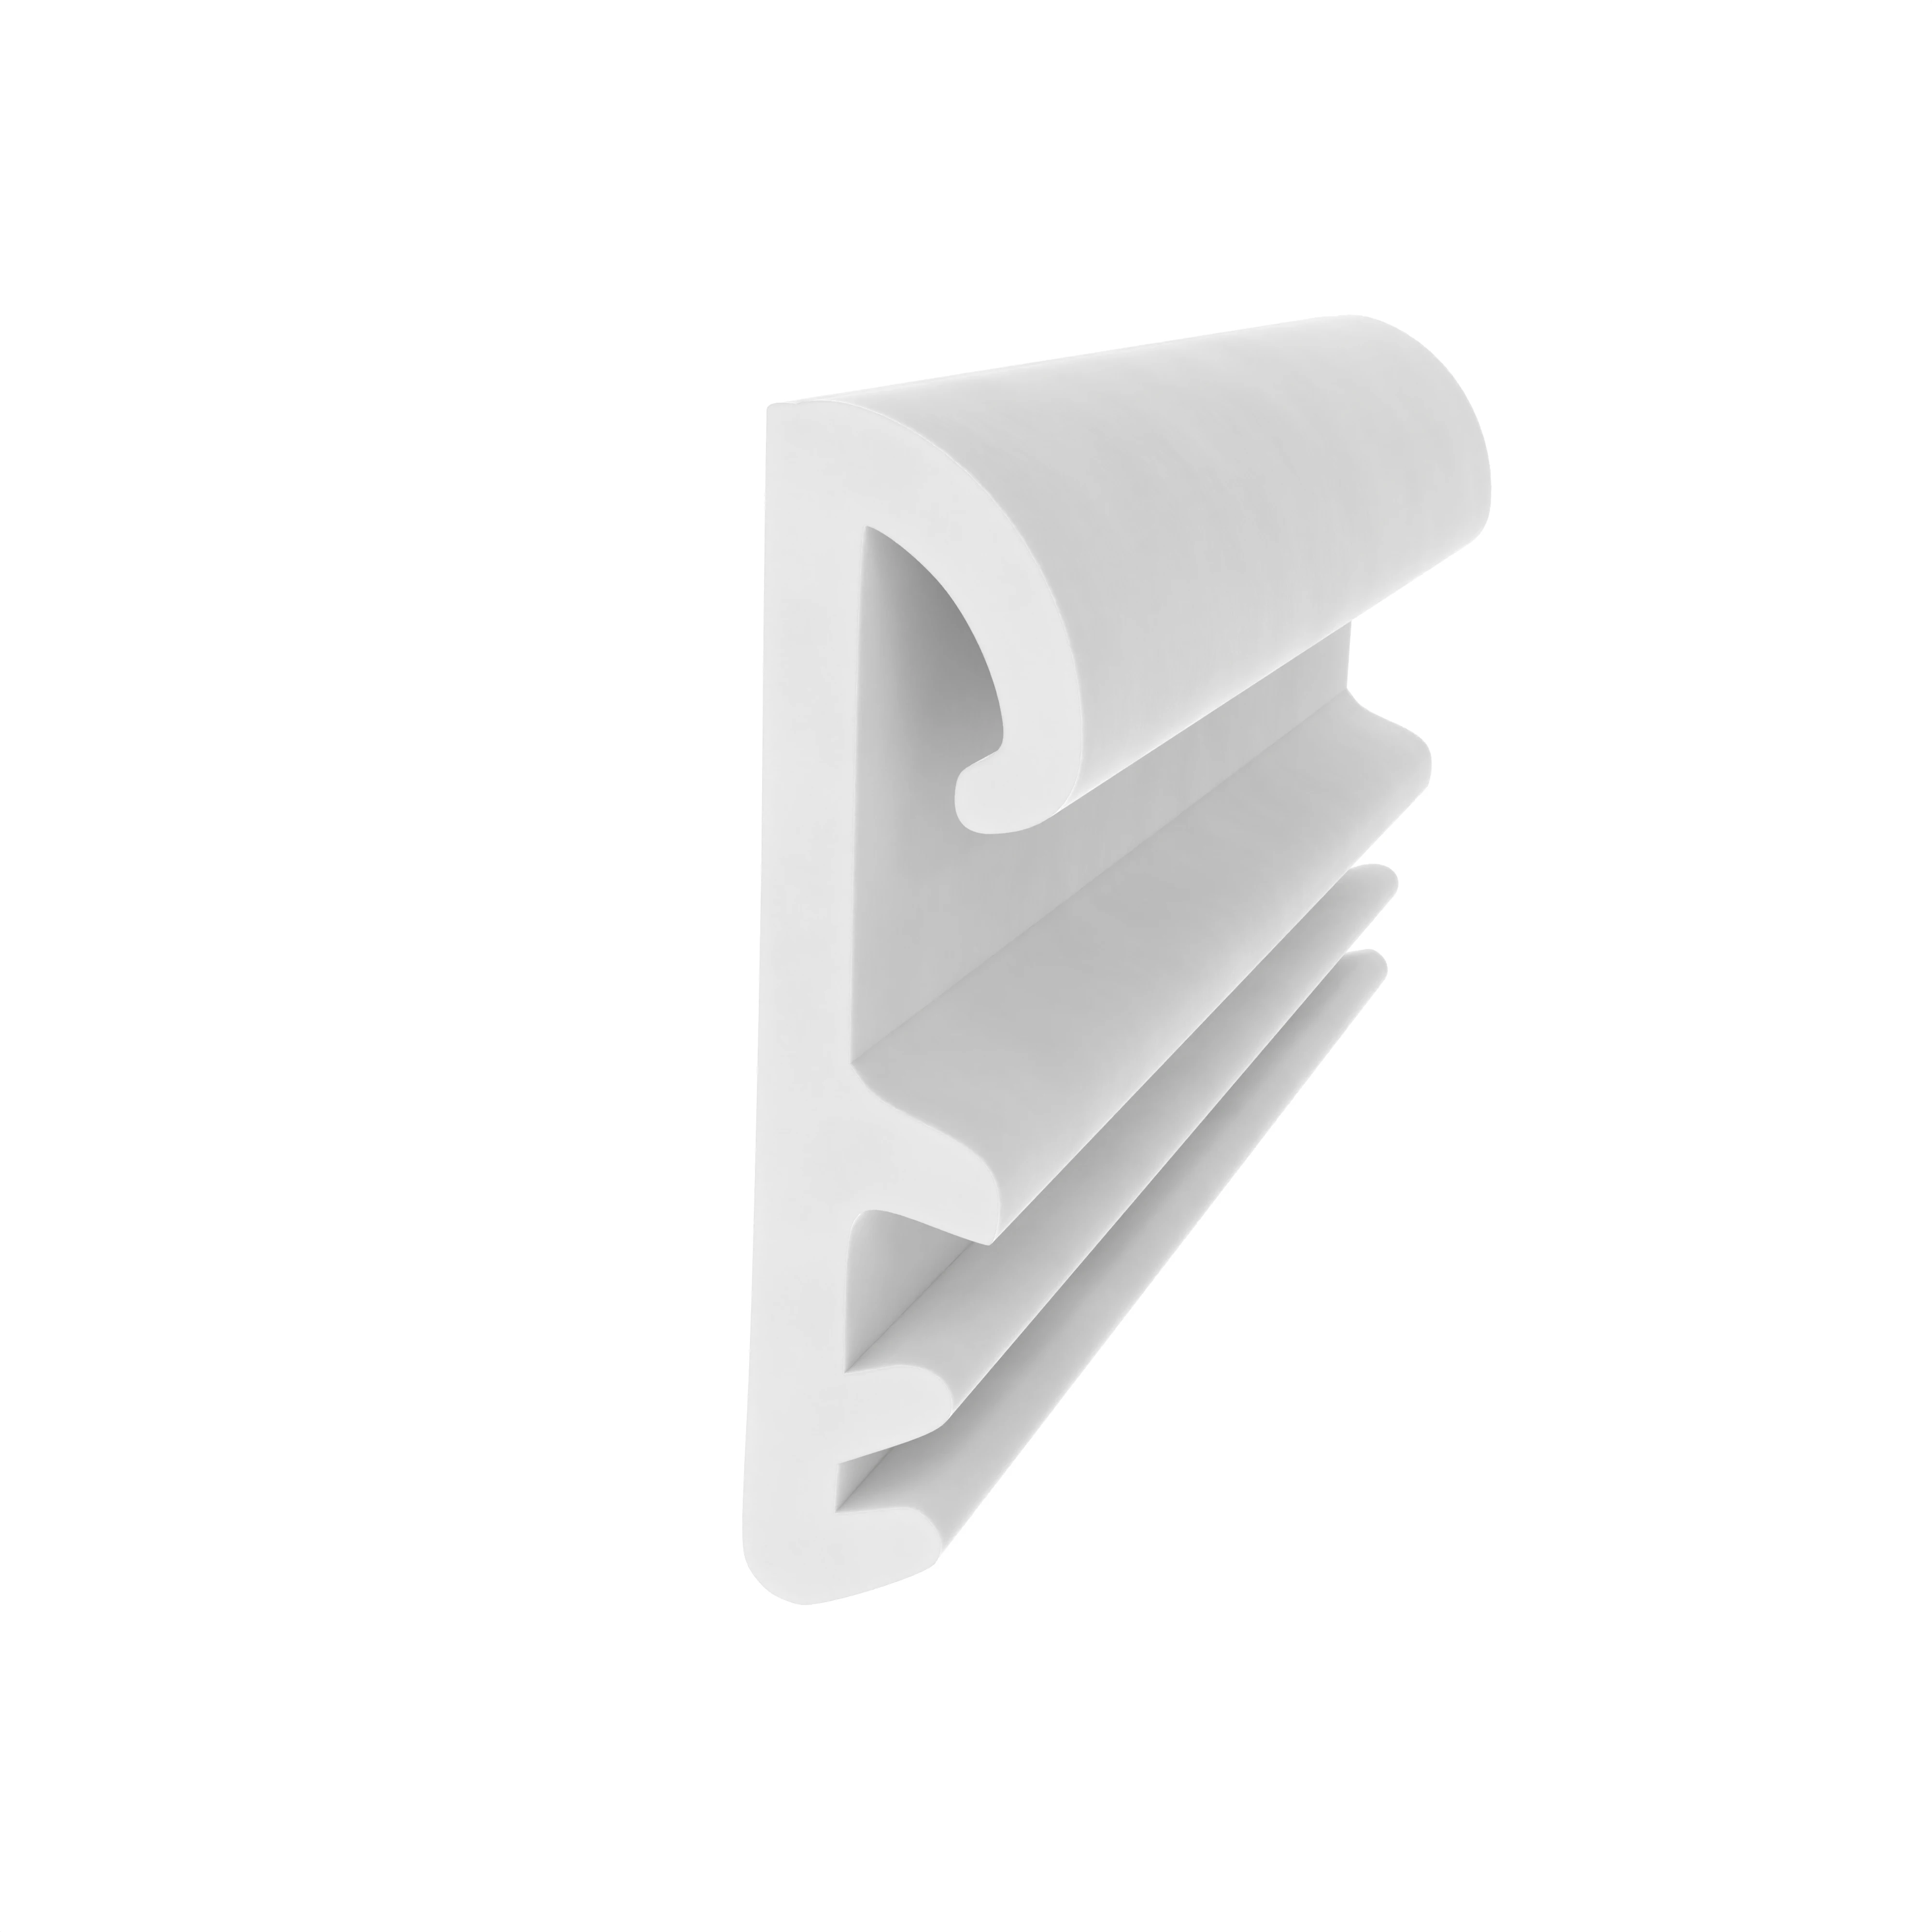 Flügelfalzdichtung für Holzflügel und -zargen | 12 mm Falzhöhe | Farbe: weiß